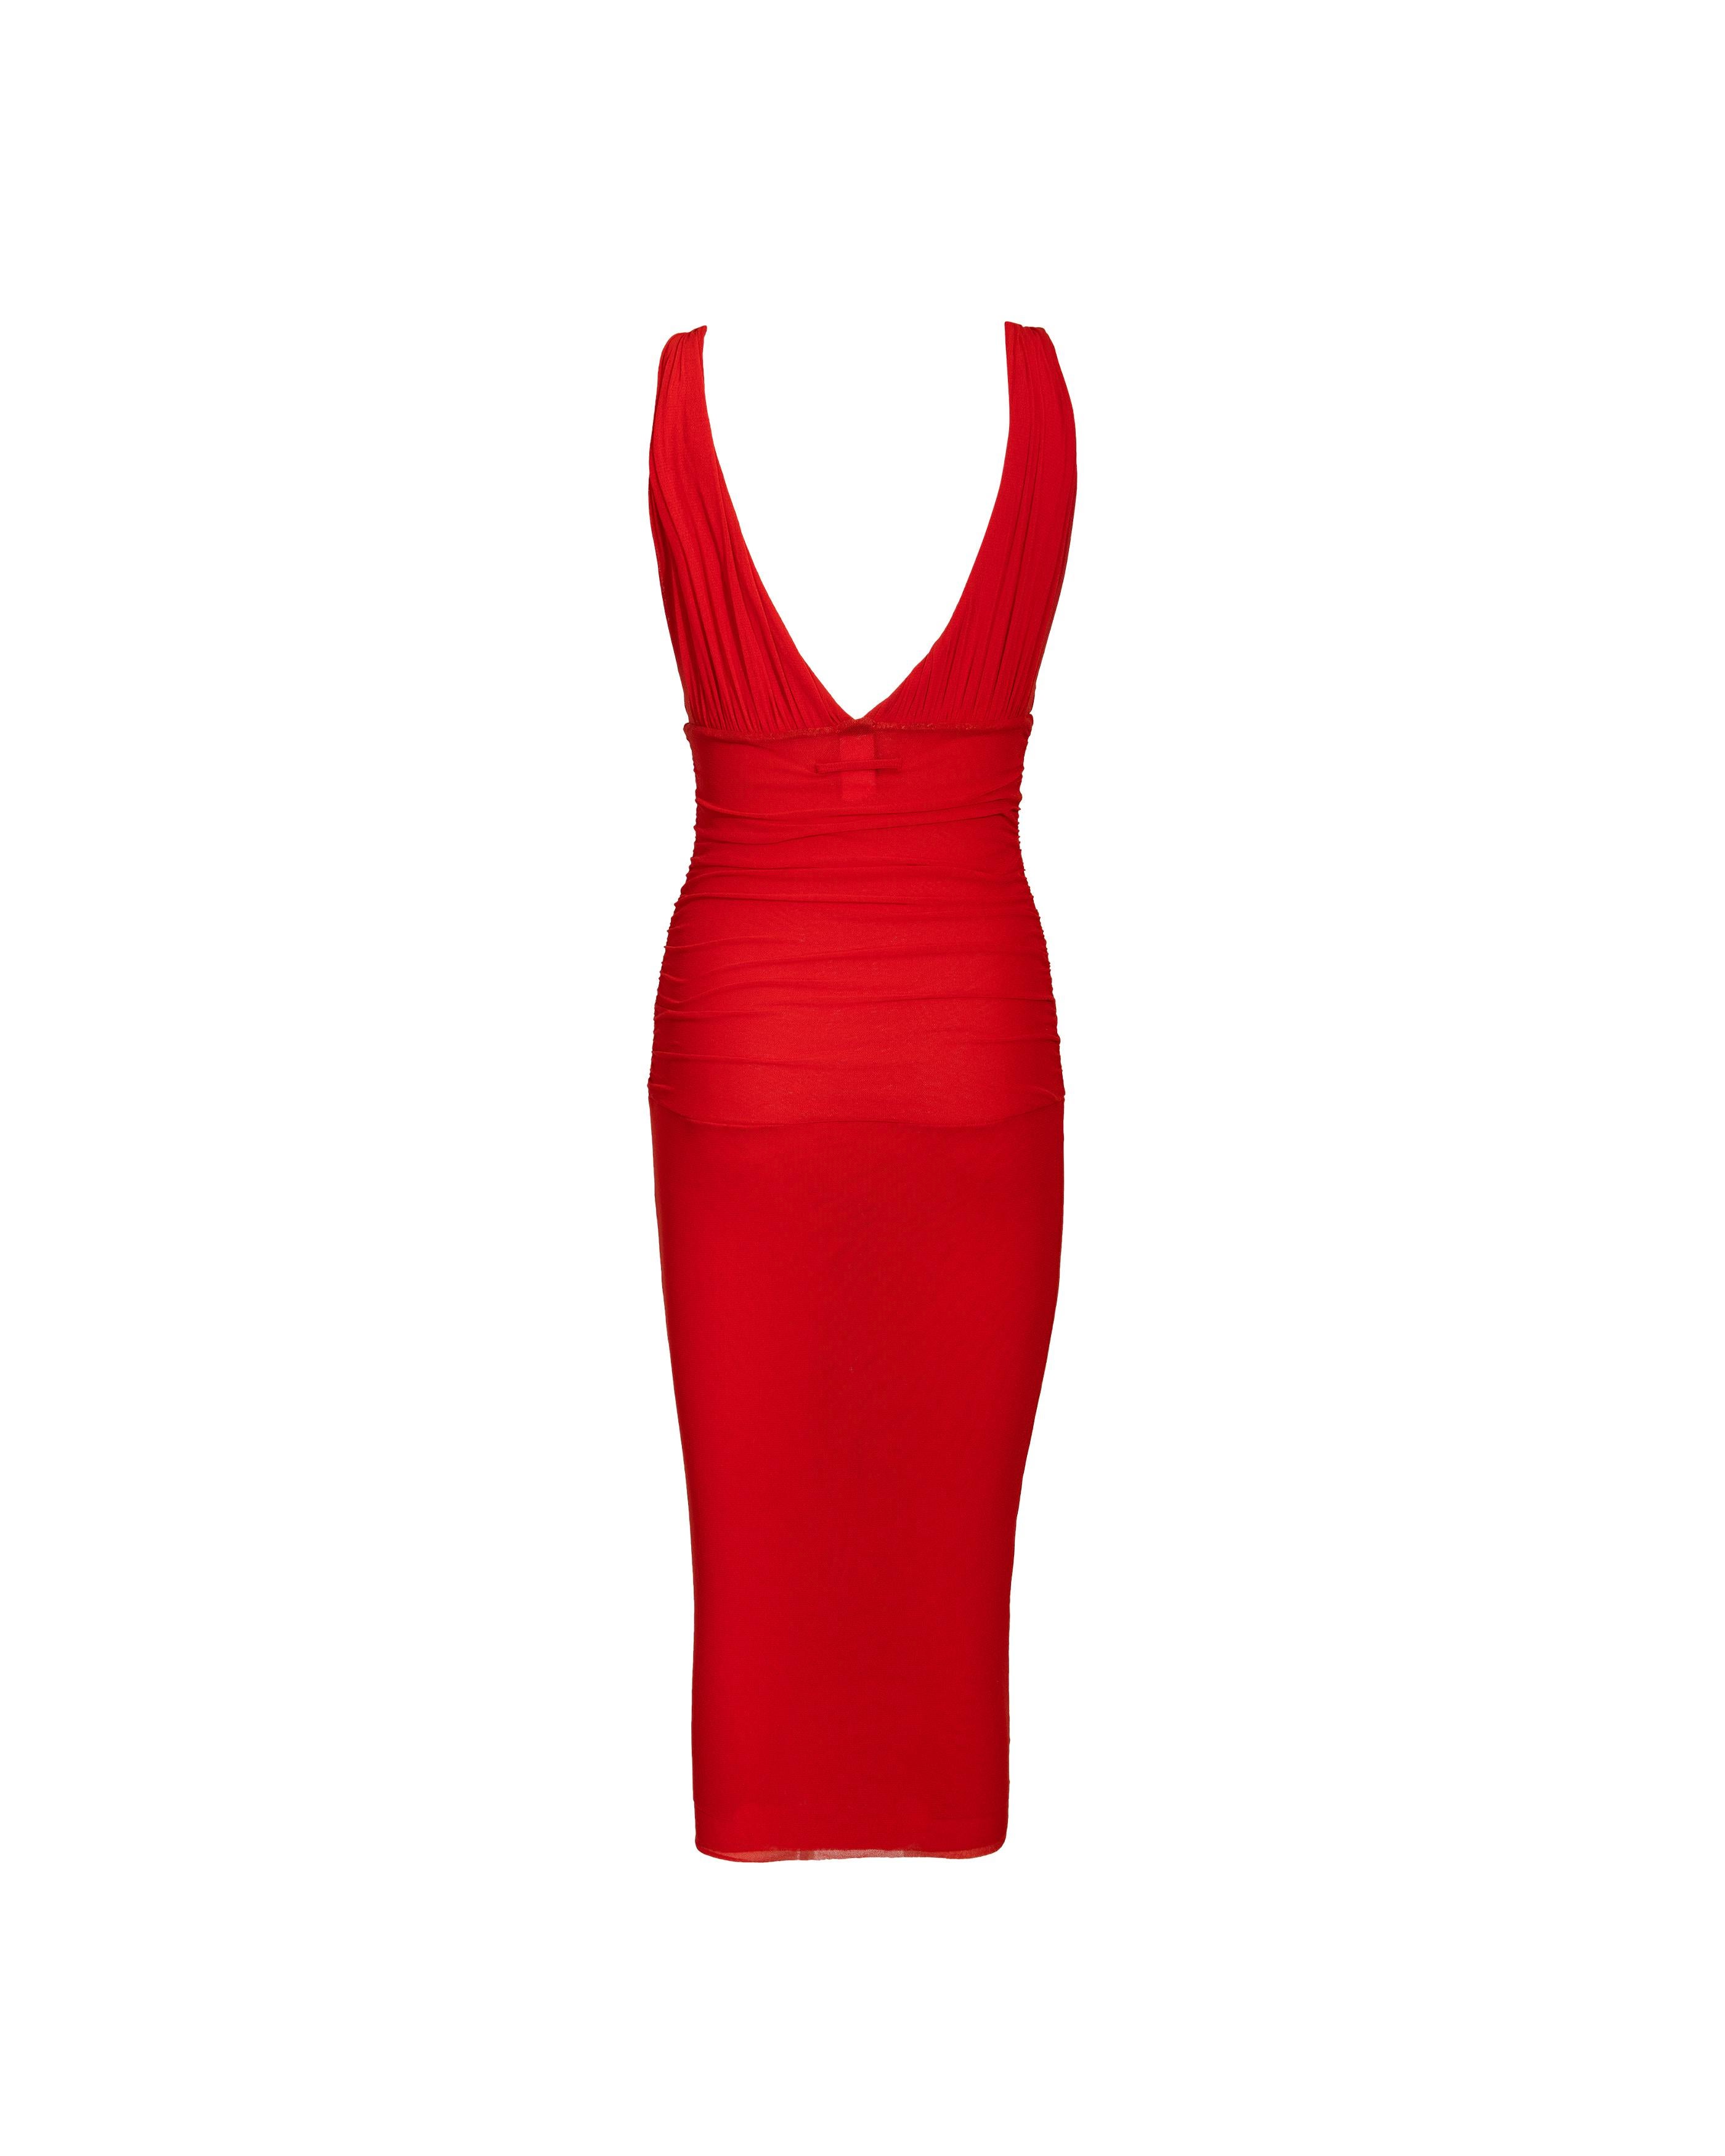 Women's 2000's Jean Paul Gaultier 'Soleil' Red Below-Knee Sleeveless Dress